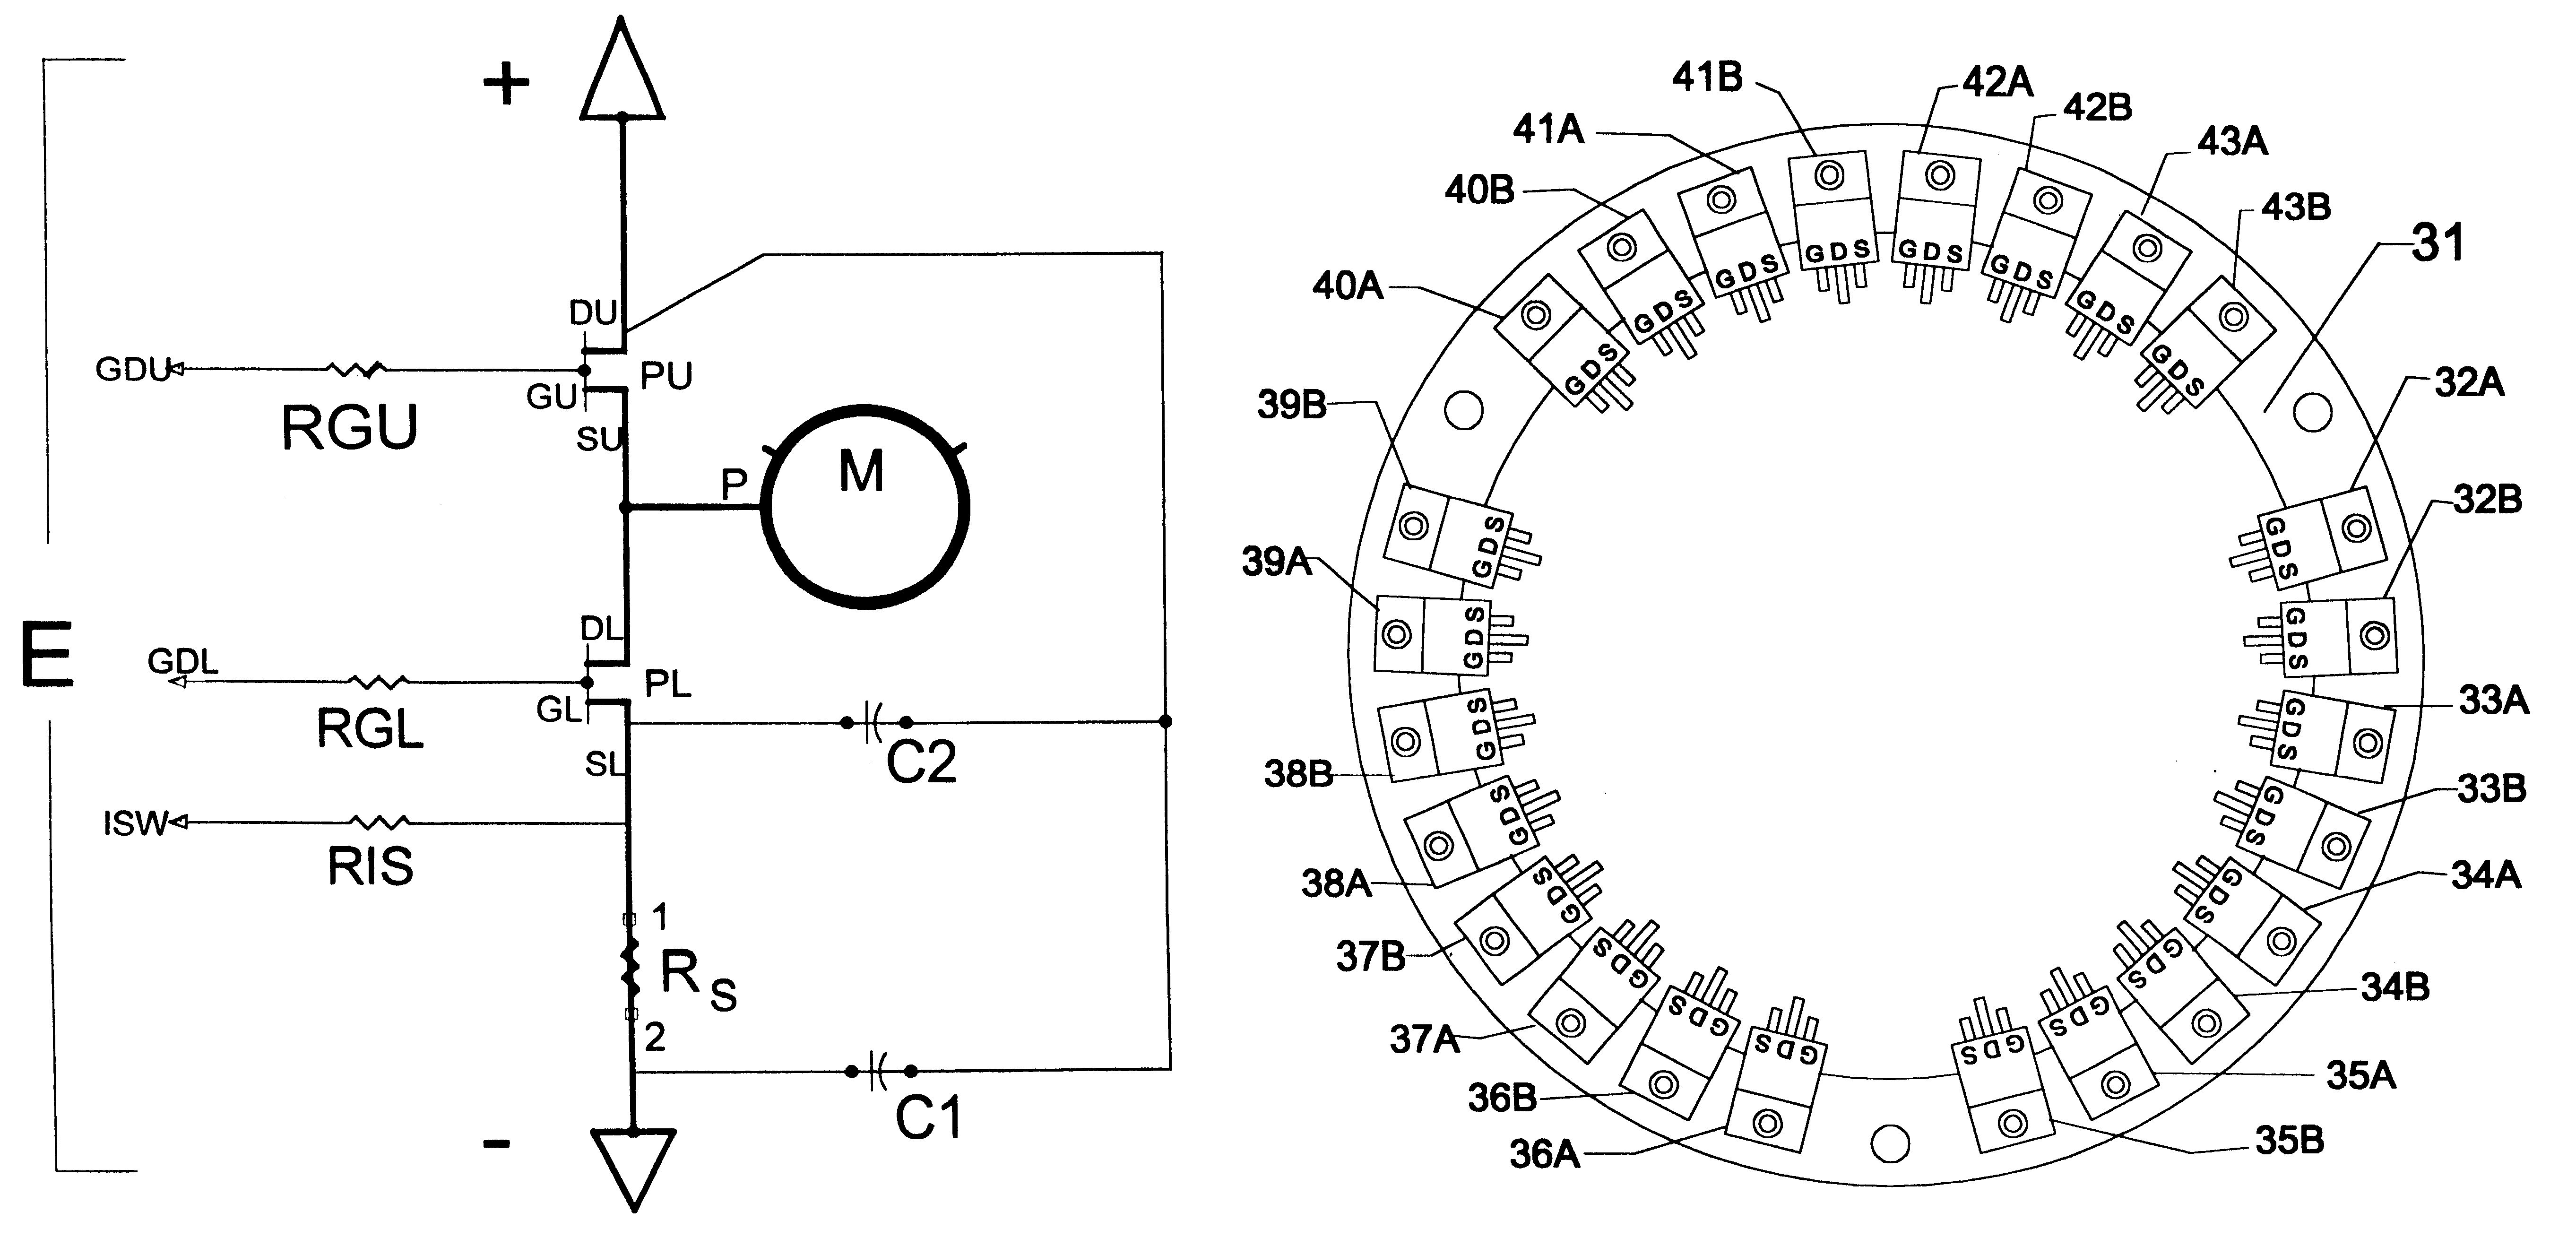 Motor controller power switch arrangement